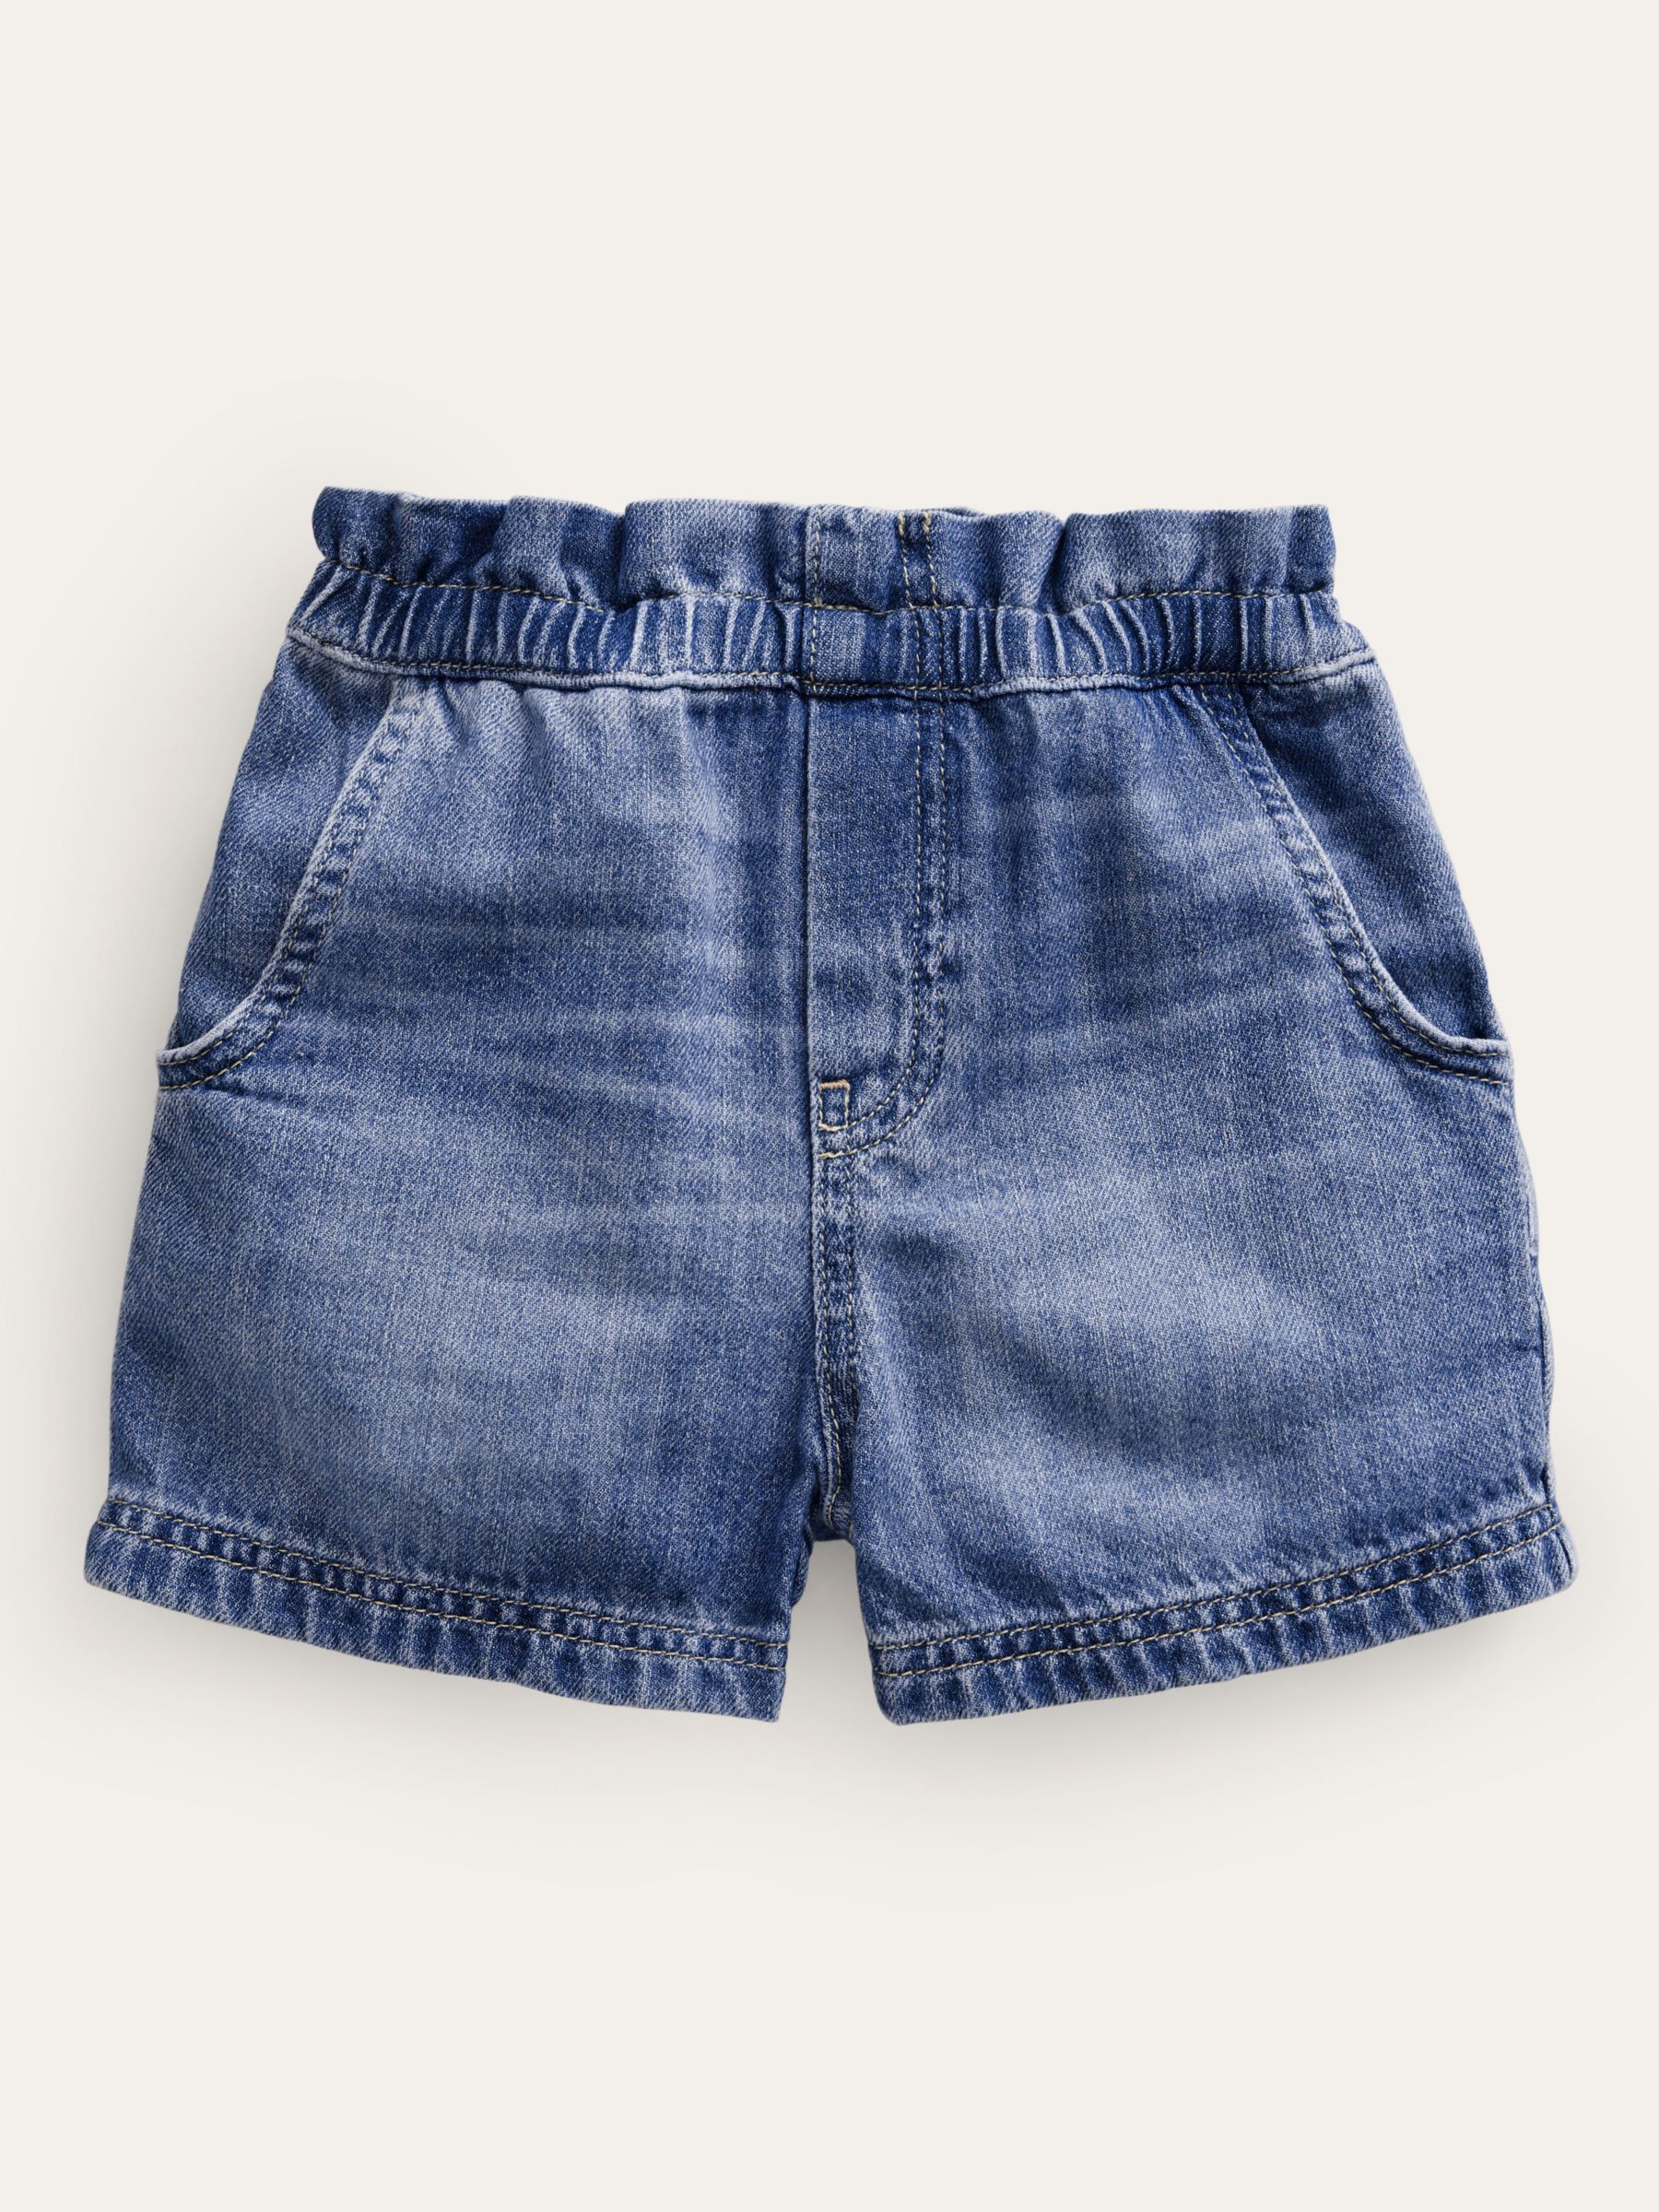 Mini Boden Girl's Pull On Plain Denim Shorts, Blue, 3 years